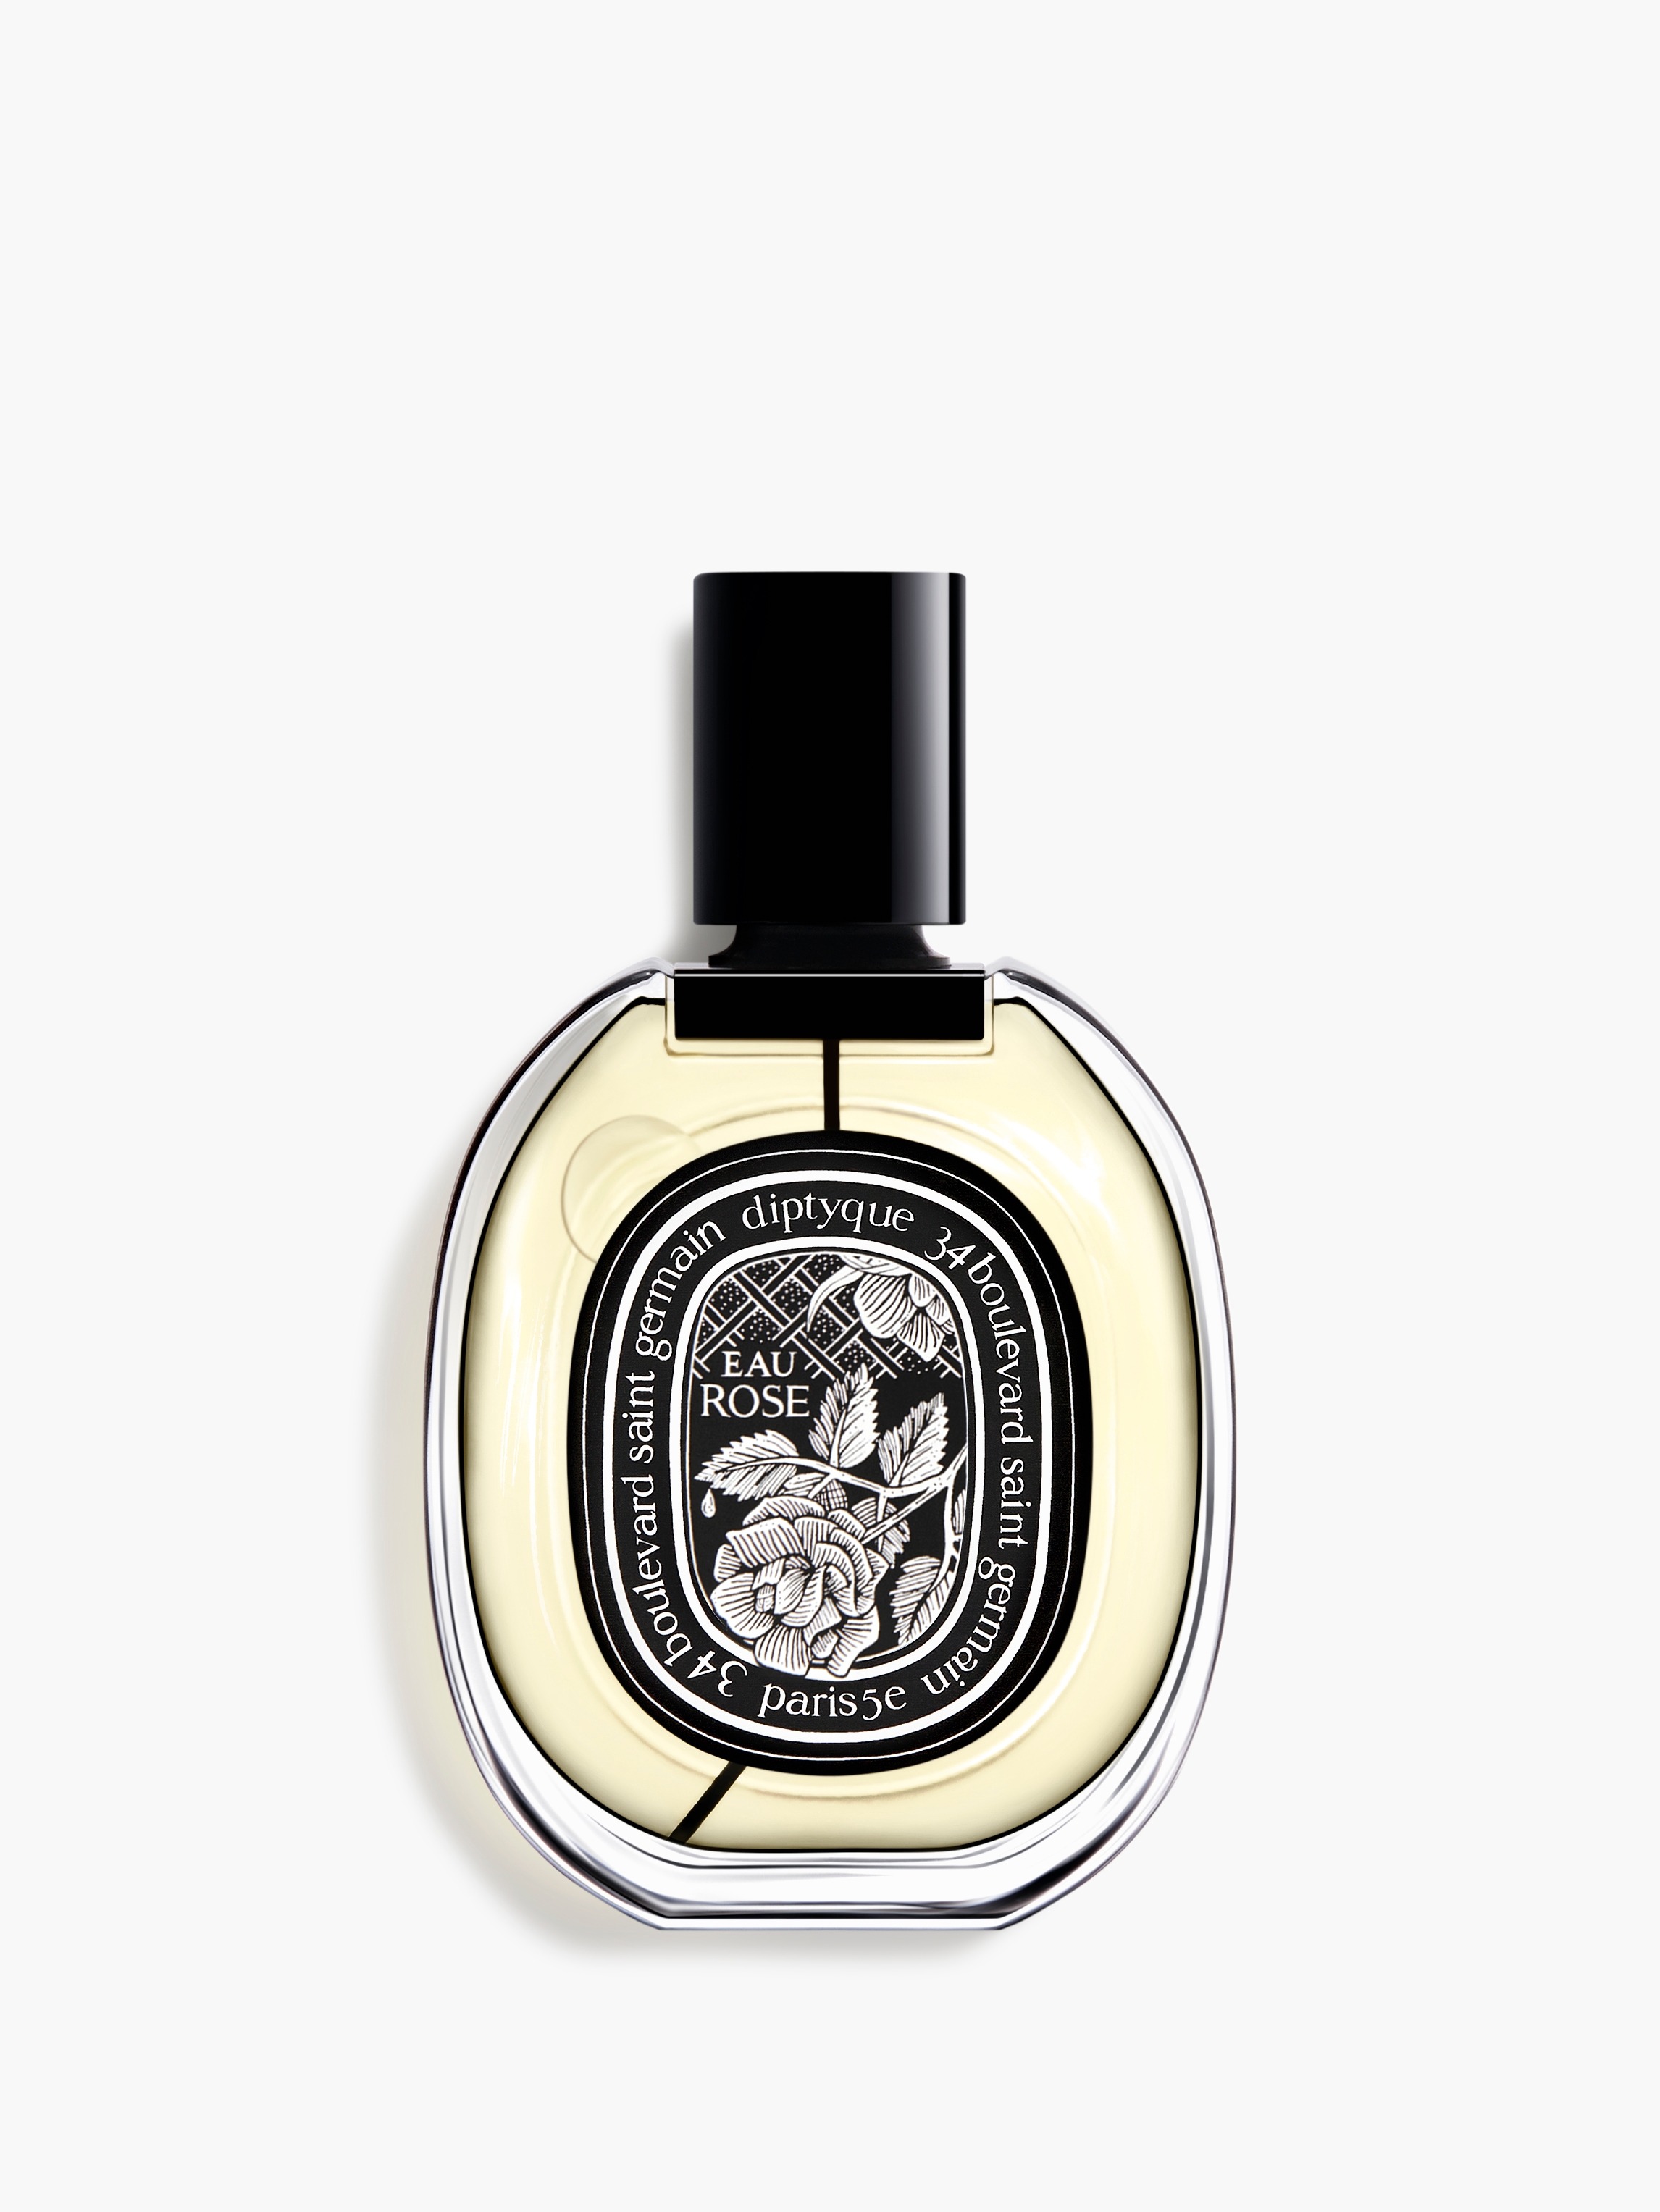 Fleur De Peau Eau De Parfum Spray - 75ml/2.5oz : : Beauty